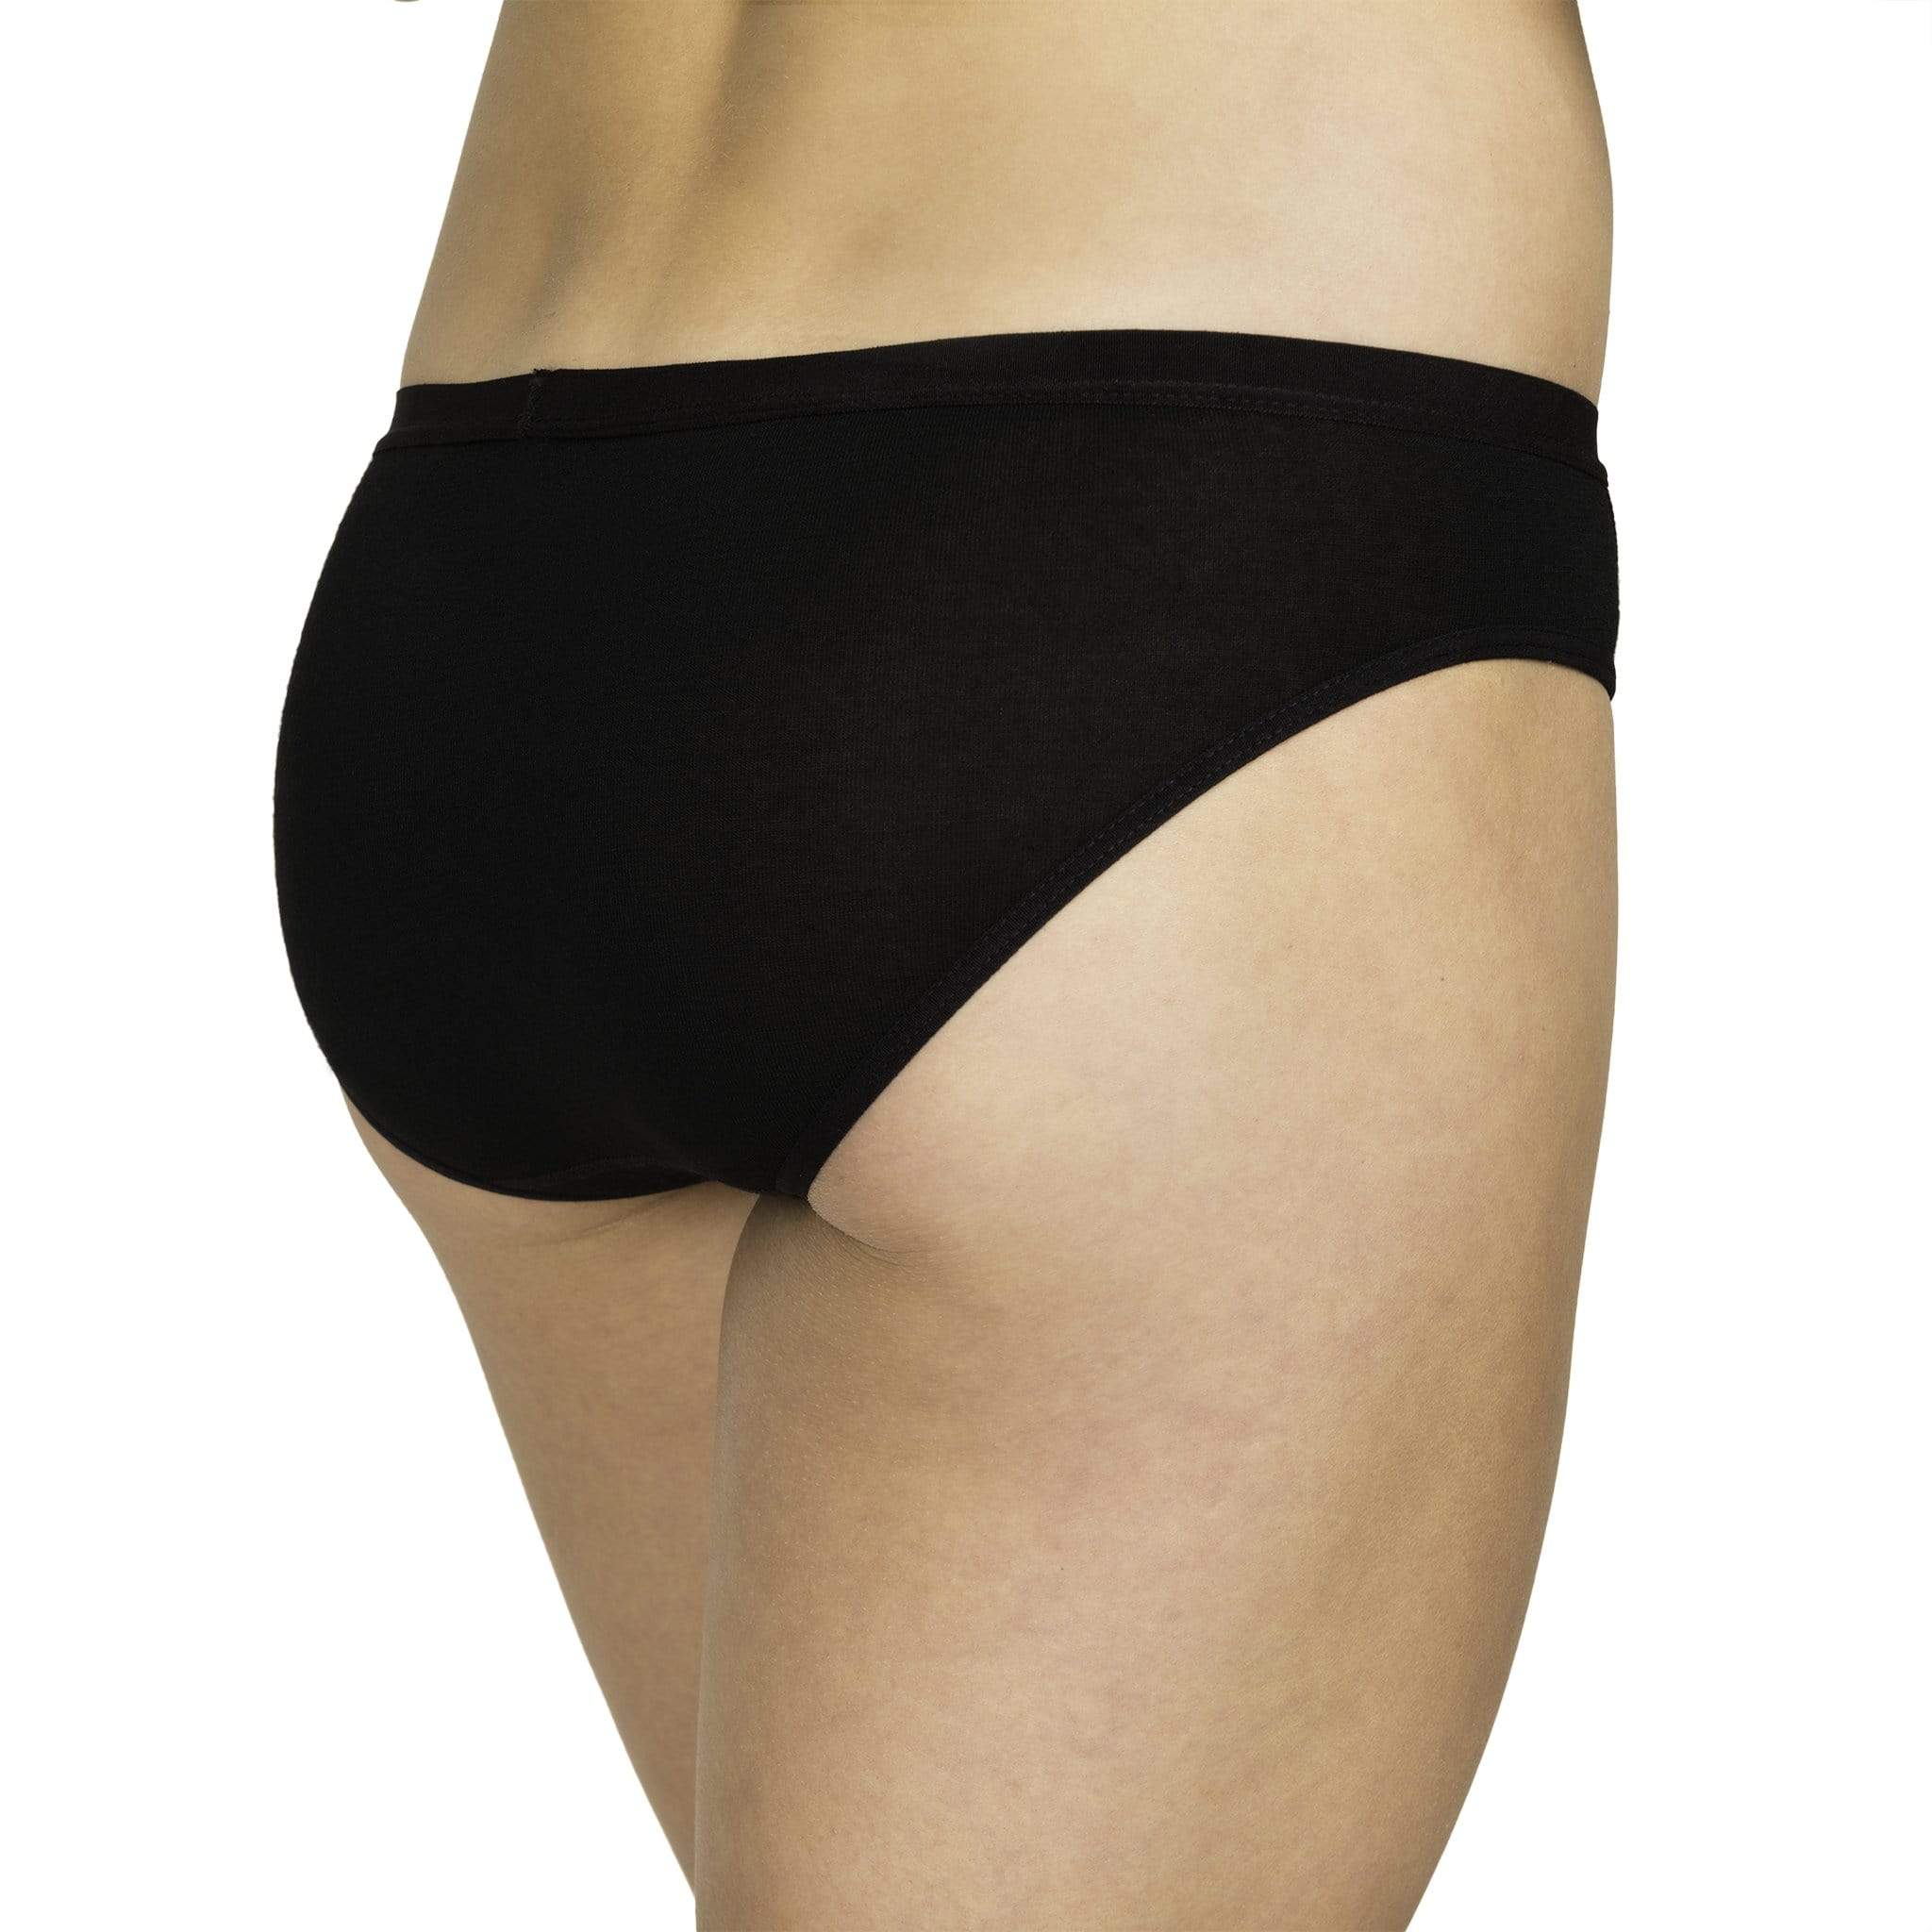 BLAKLADER Women's flame resistant long underwear 68% merino wool Black